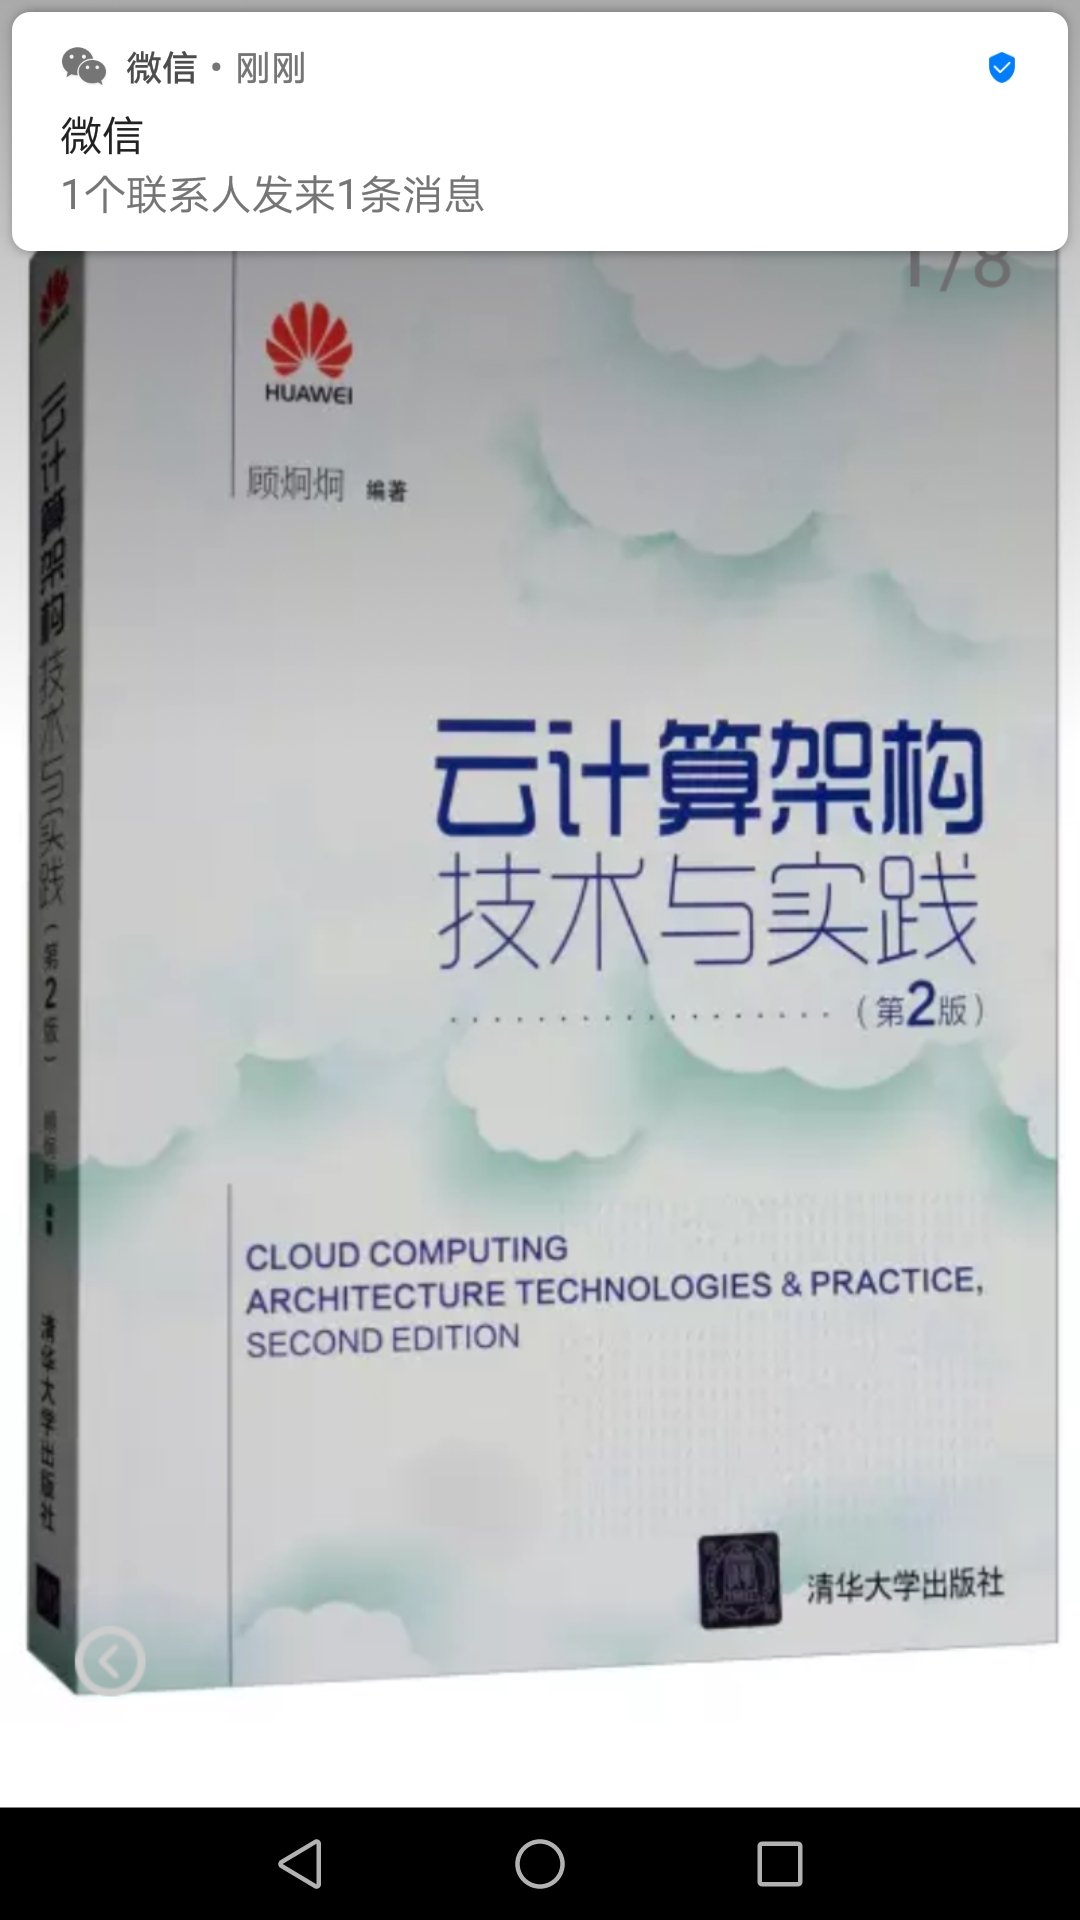 全面介绍了云计算架构，包括openstack和hadoop技术，很有参考作用。